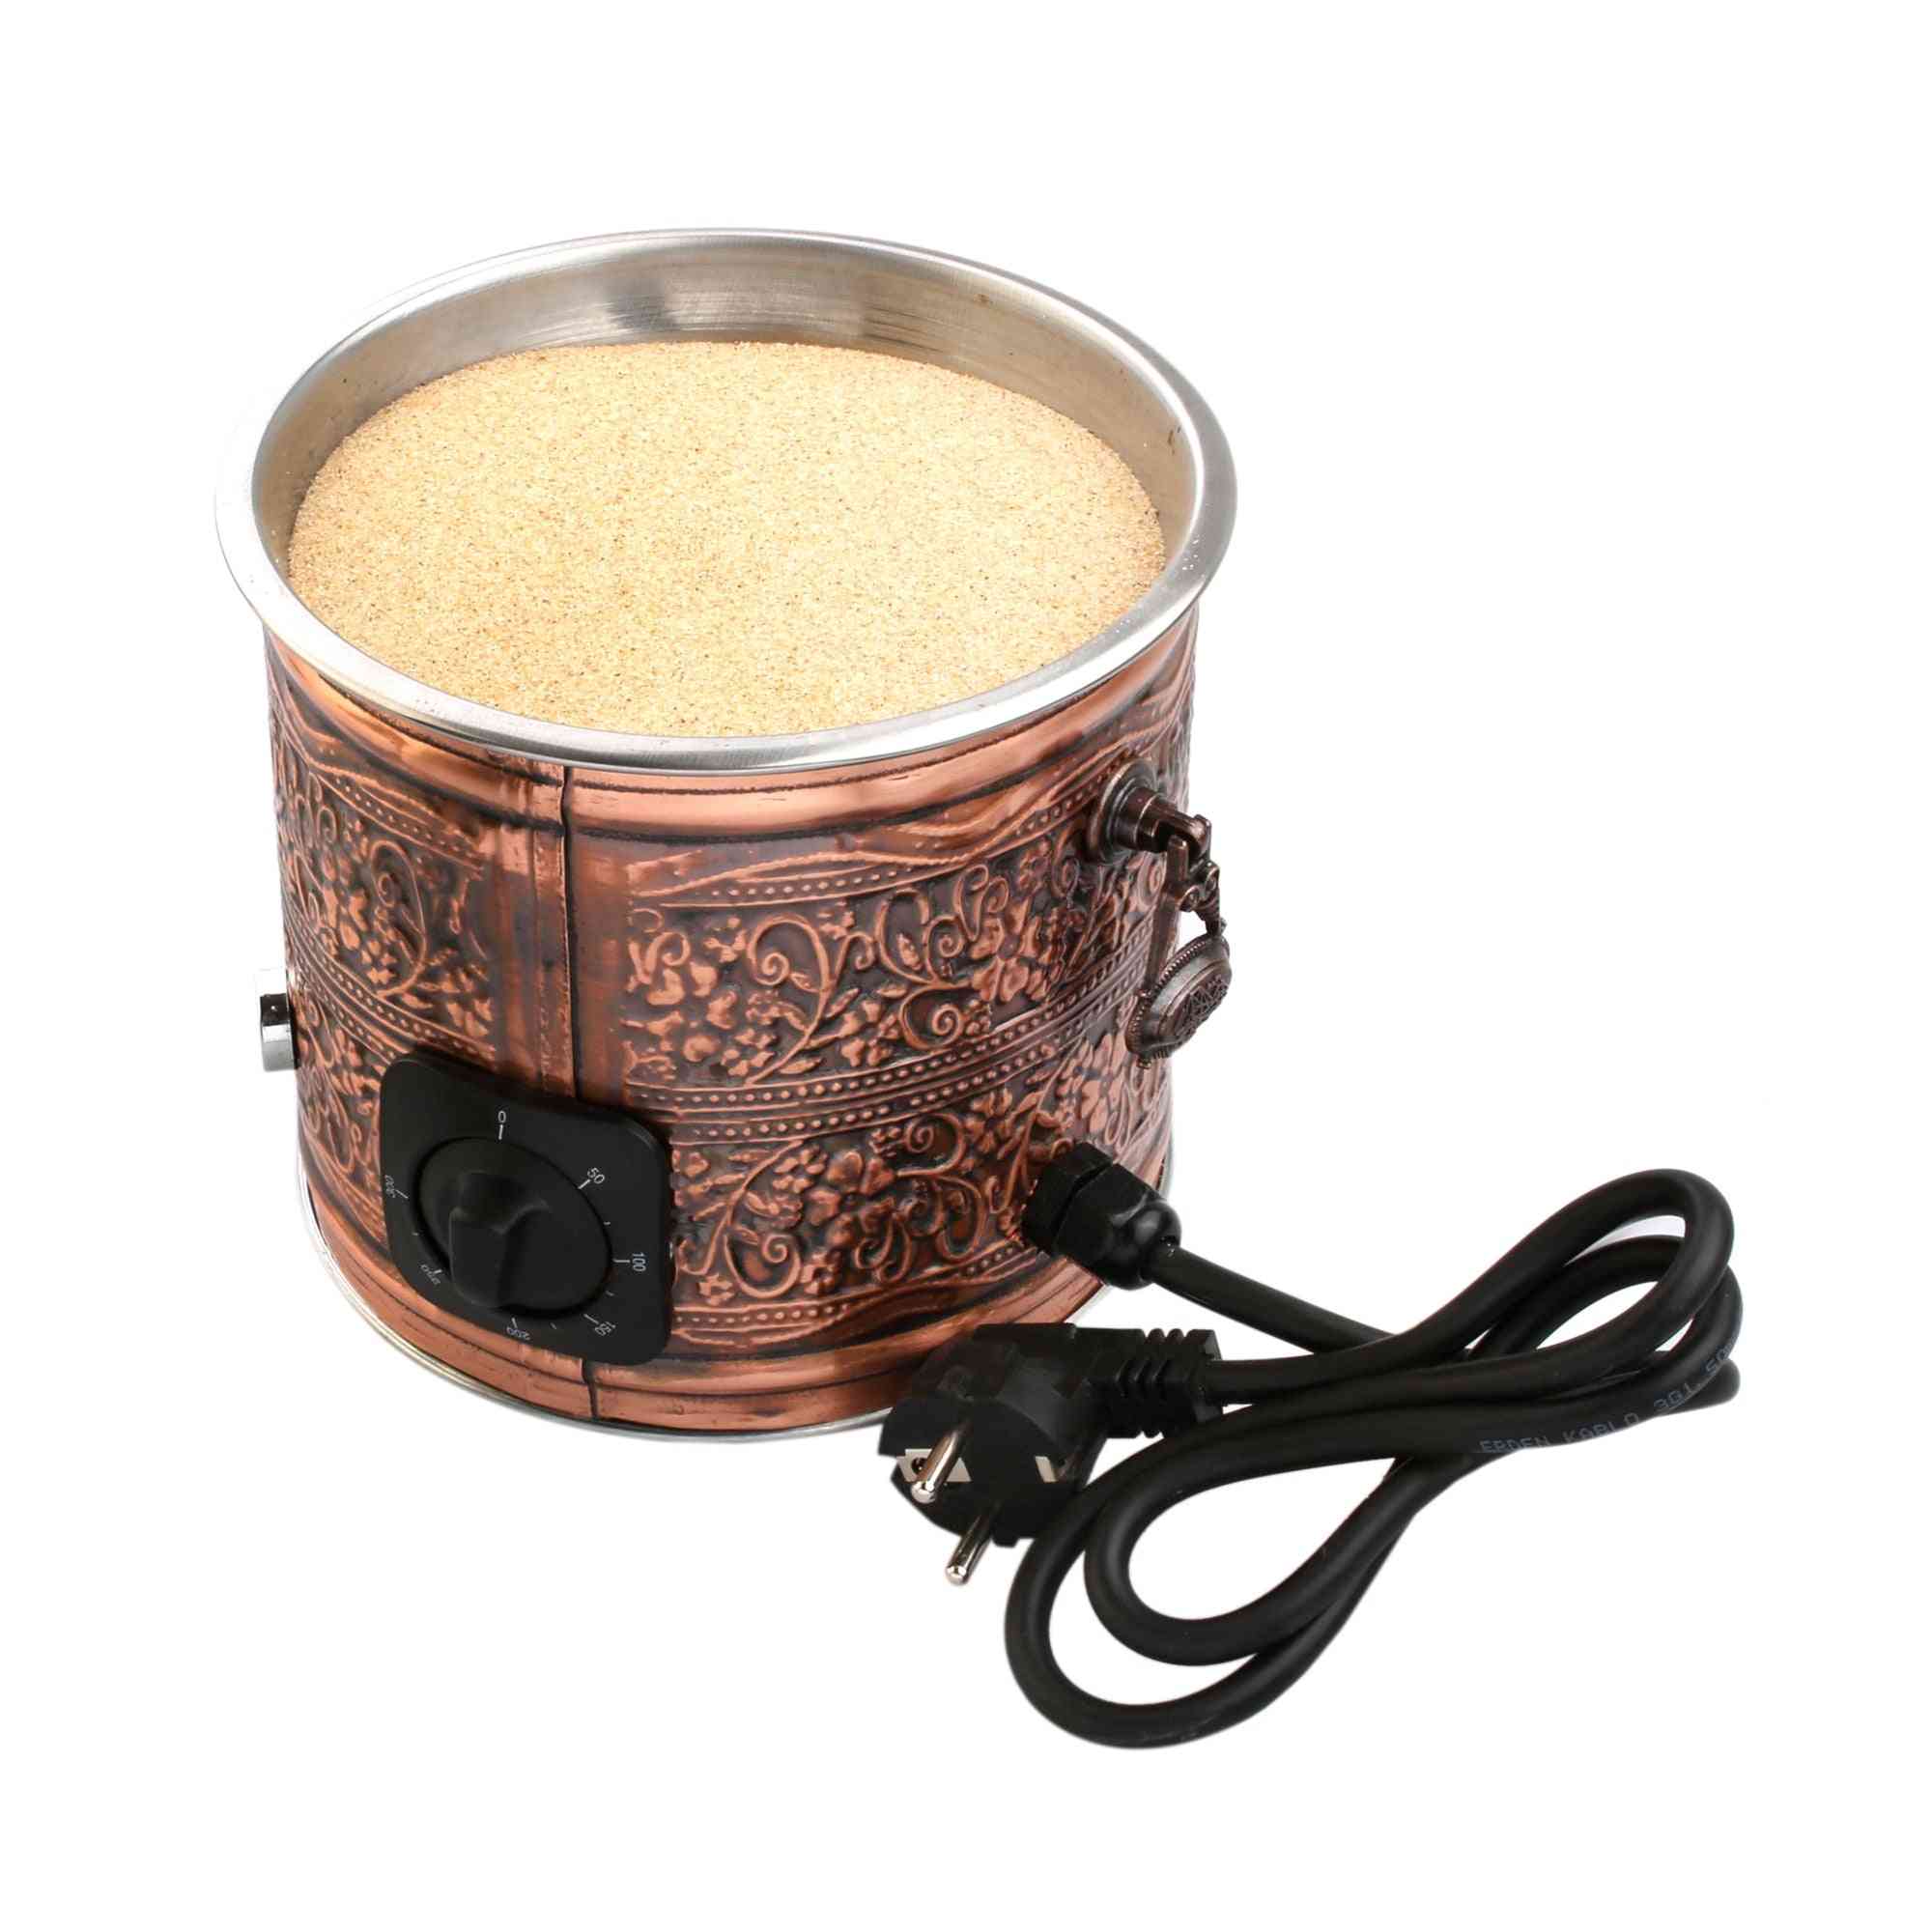 Copper Electric Hot Sand Coffee Maker Heater Machine